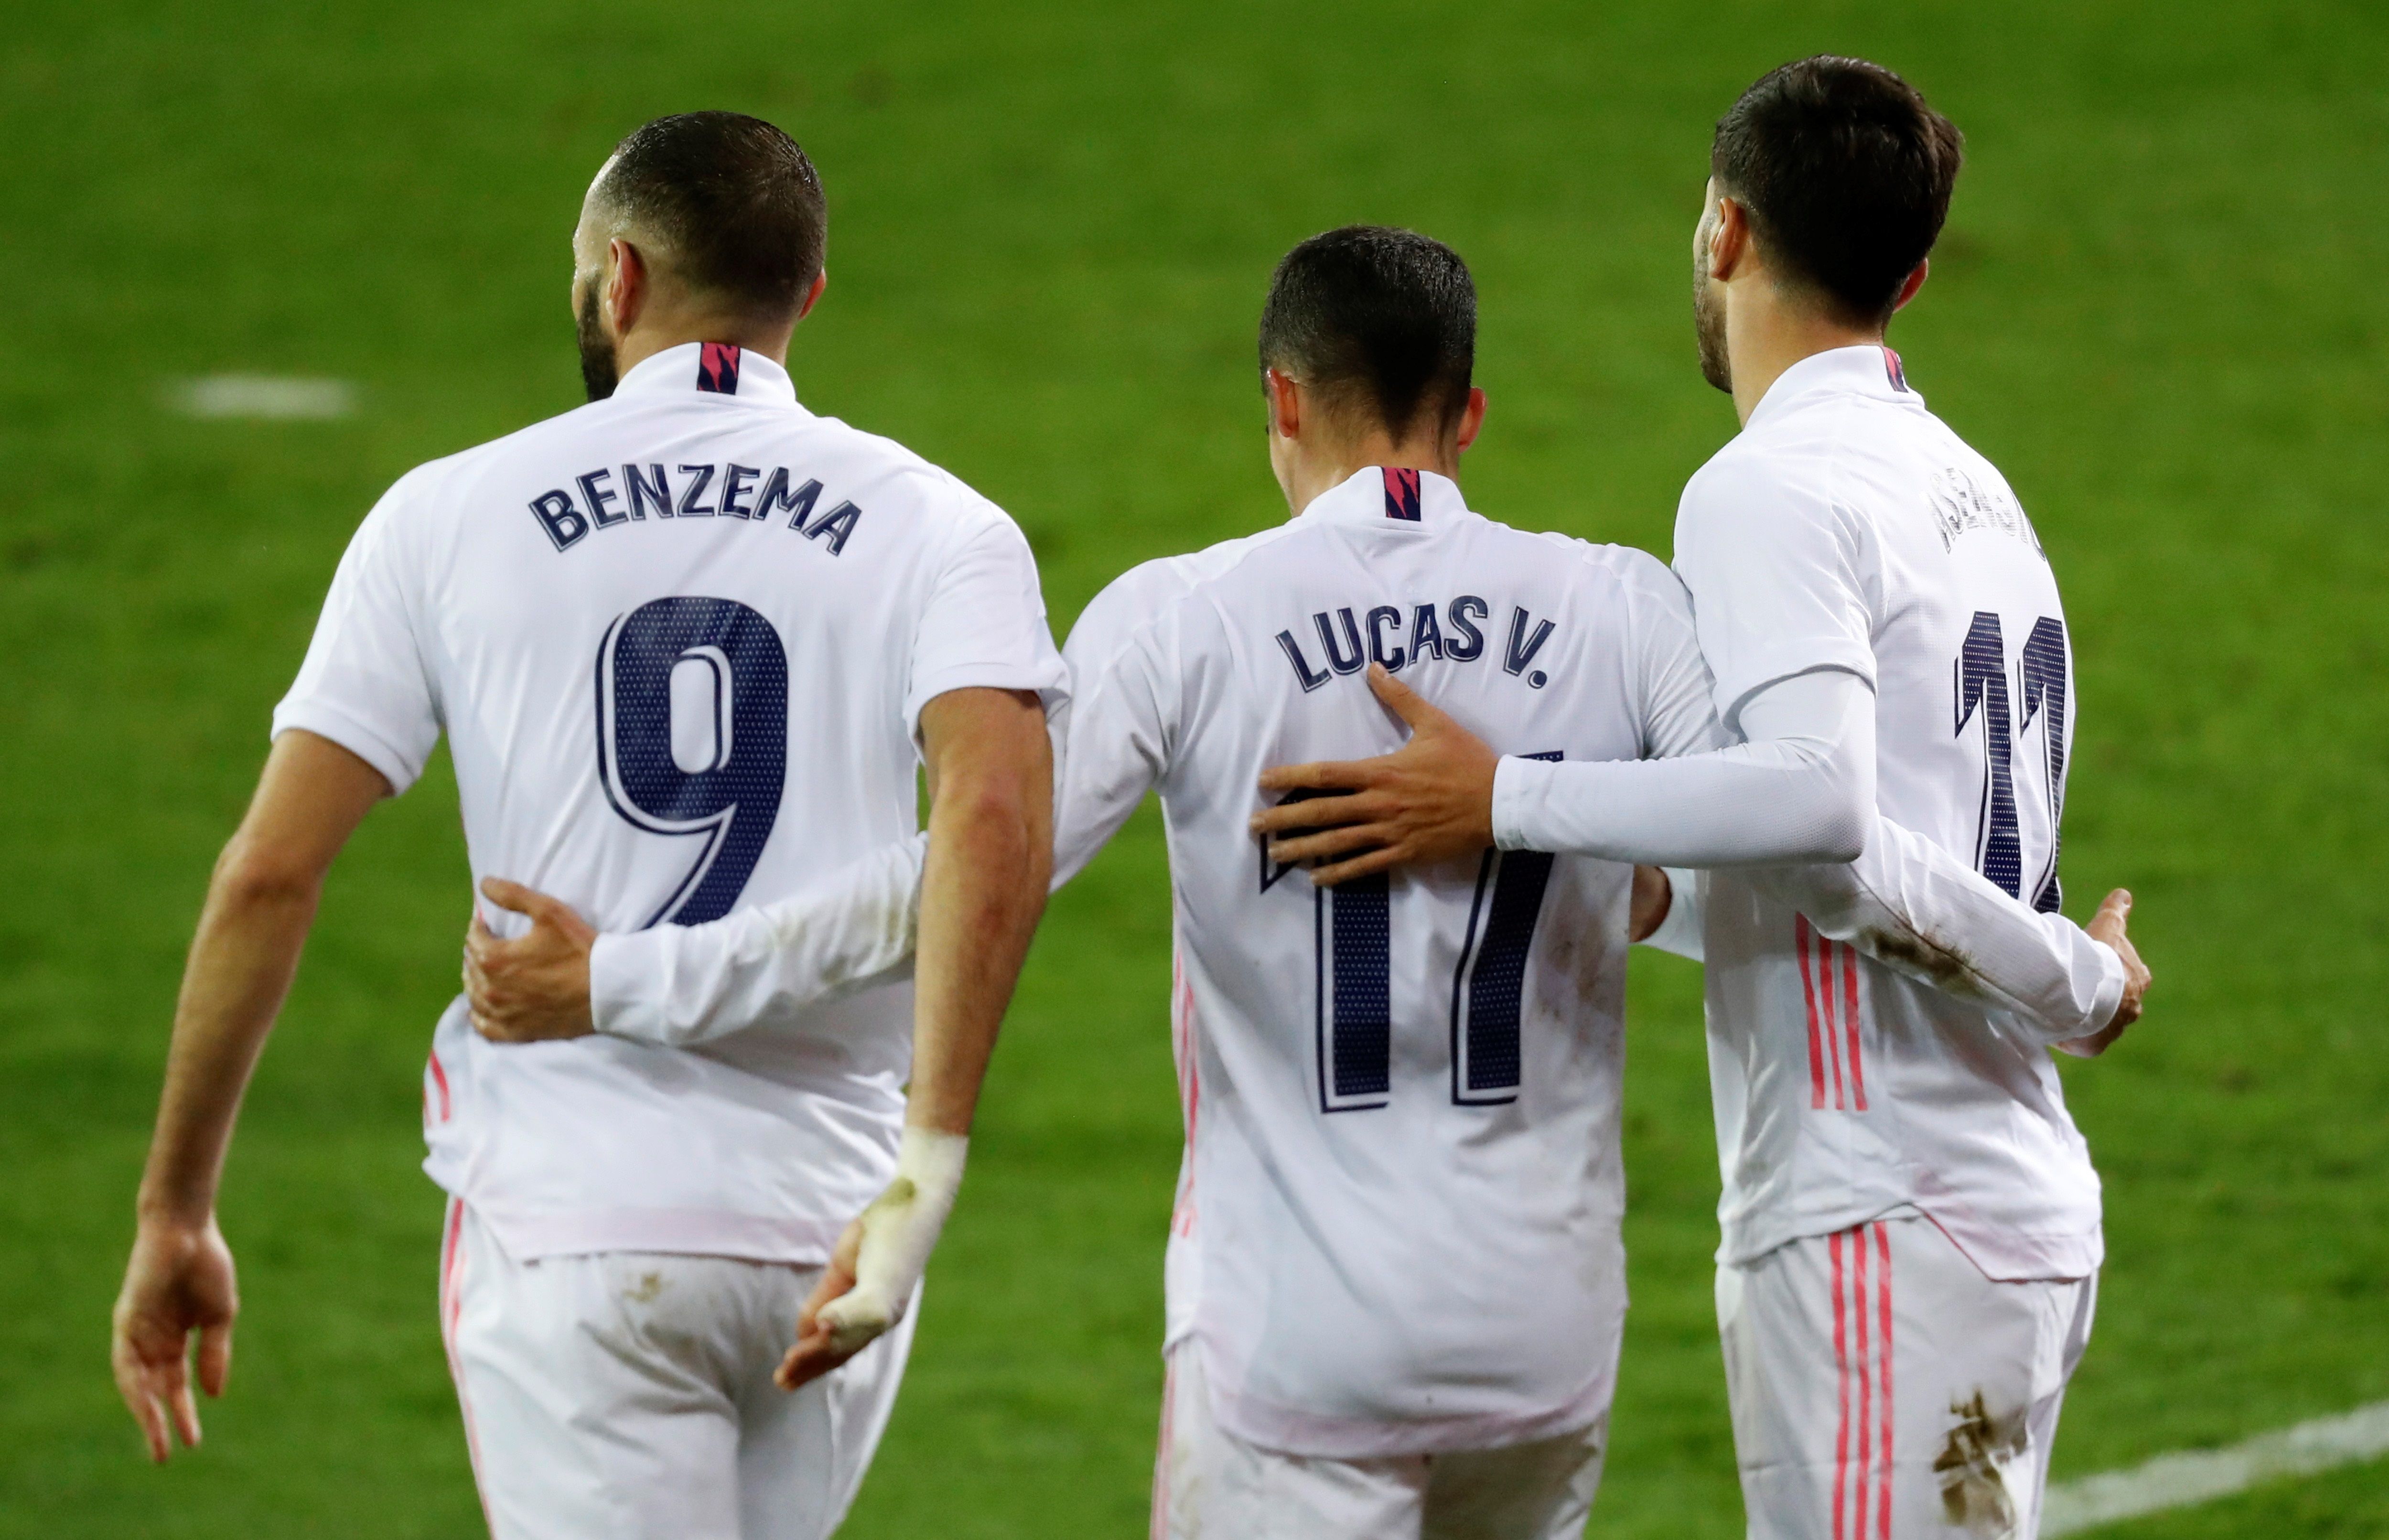 Karim Benzema y Lucas Vásquez fueron dos de los anotadores por parte del Real Madrid en el juego ante el Eibar. (Foto Prensa Libre: EFE)